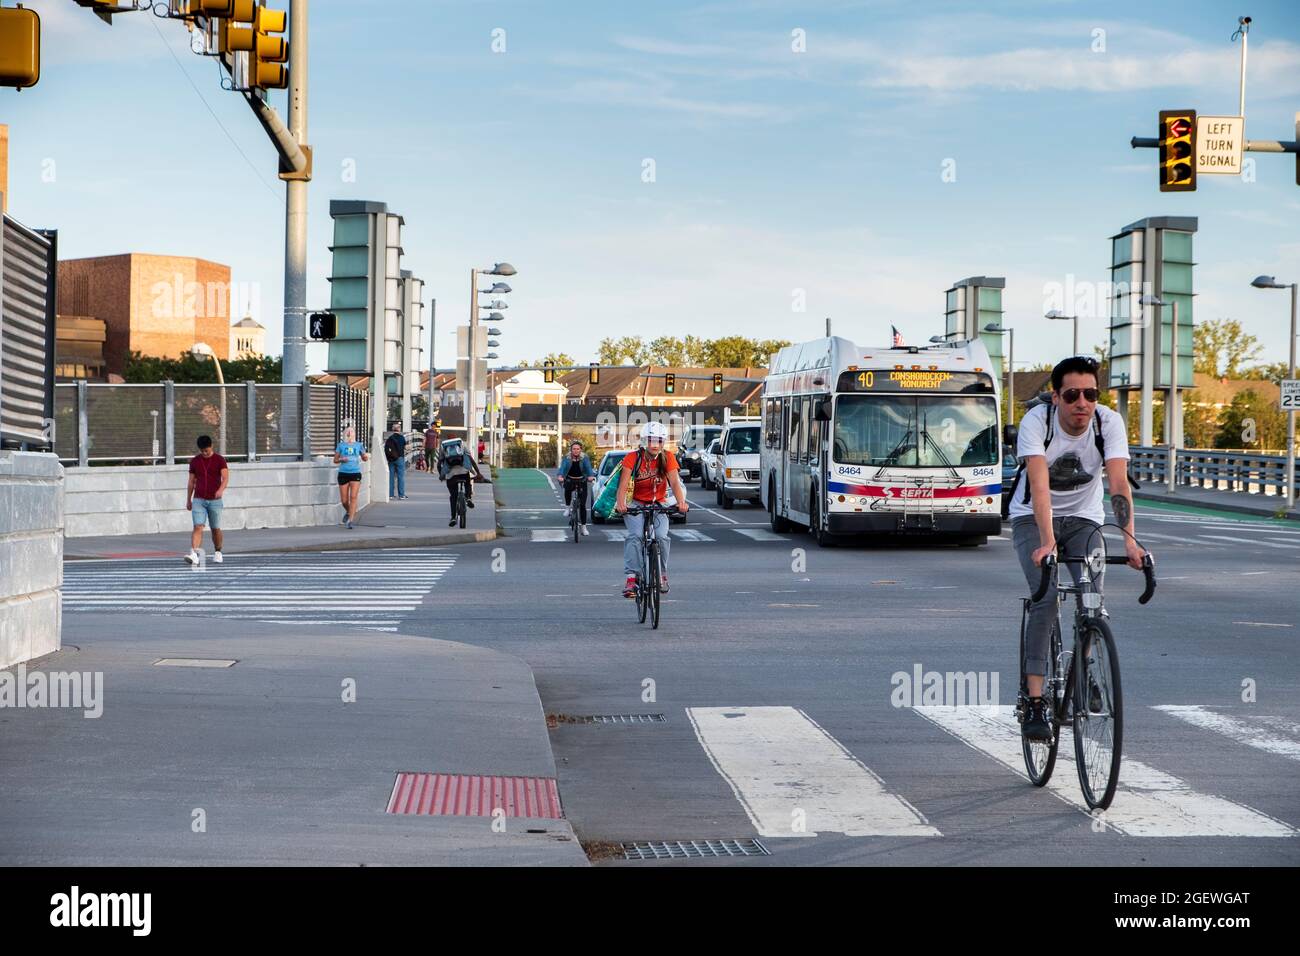 Radfahrer pendeln auf Straßen der Stadt Radwege mit Autos und Verkehr, University City, Philadelphia, Pennsylvania, USA Stockfoto